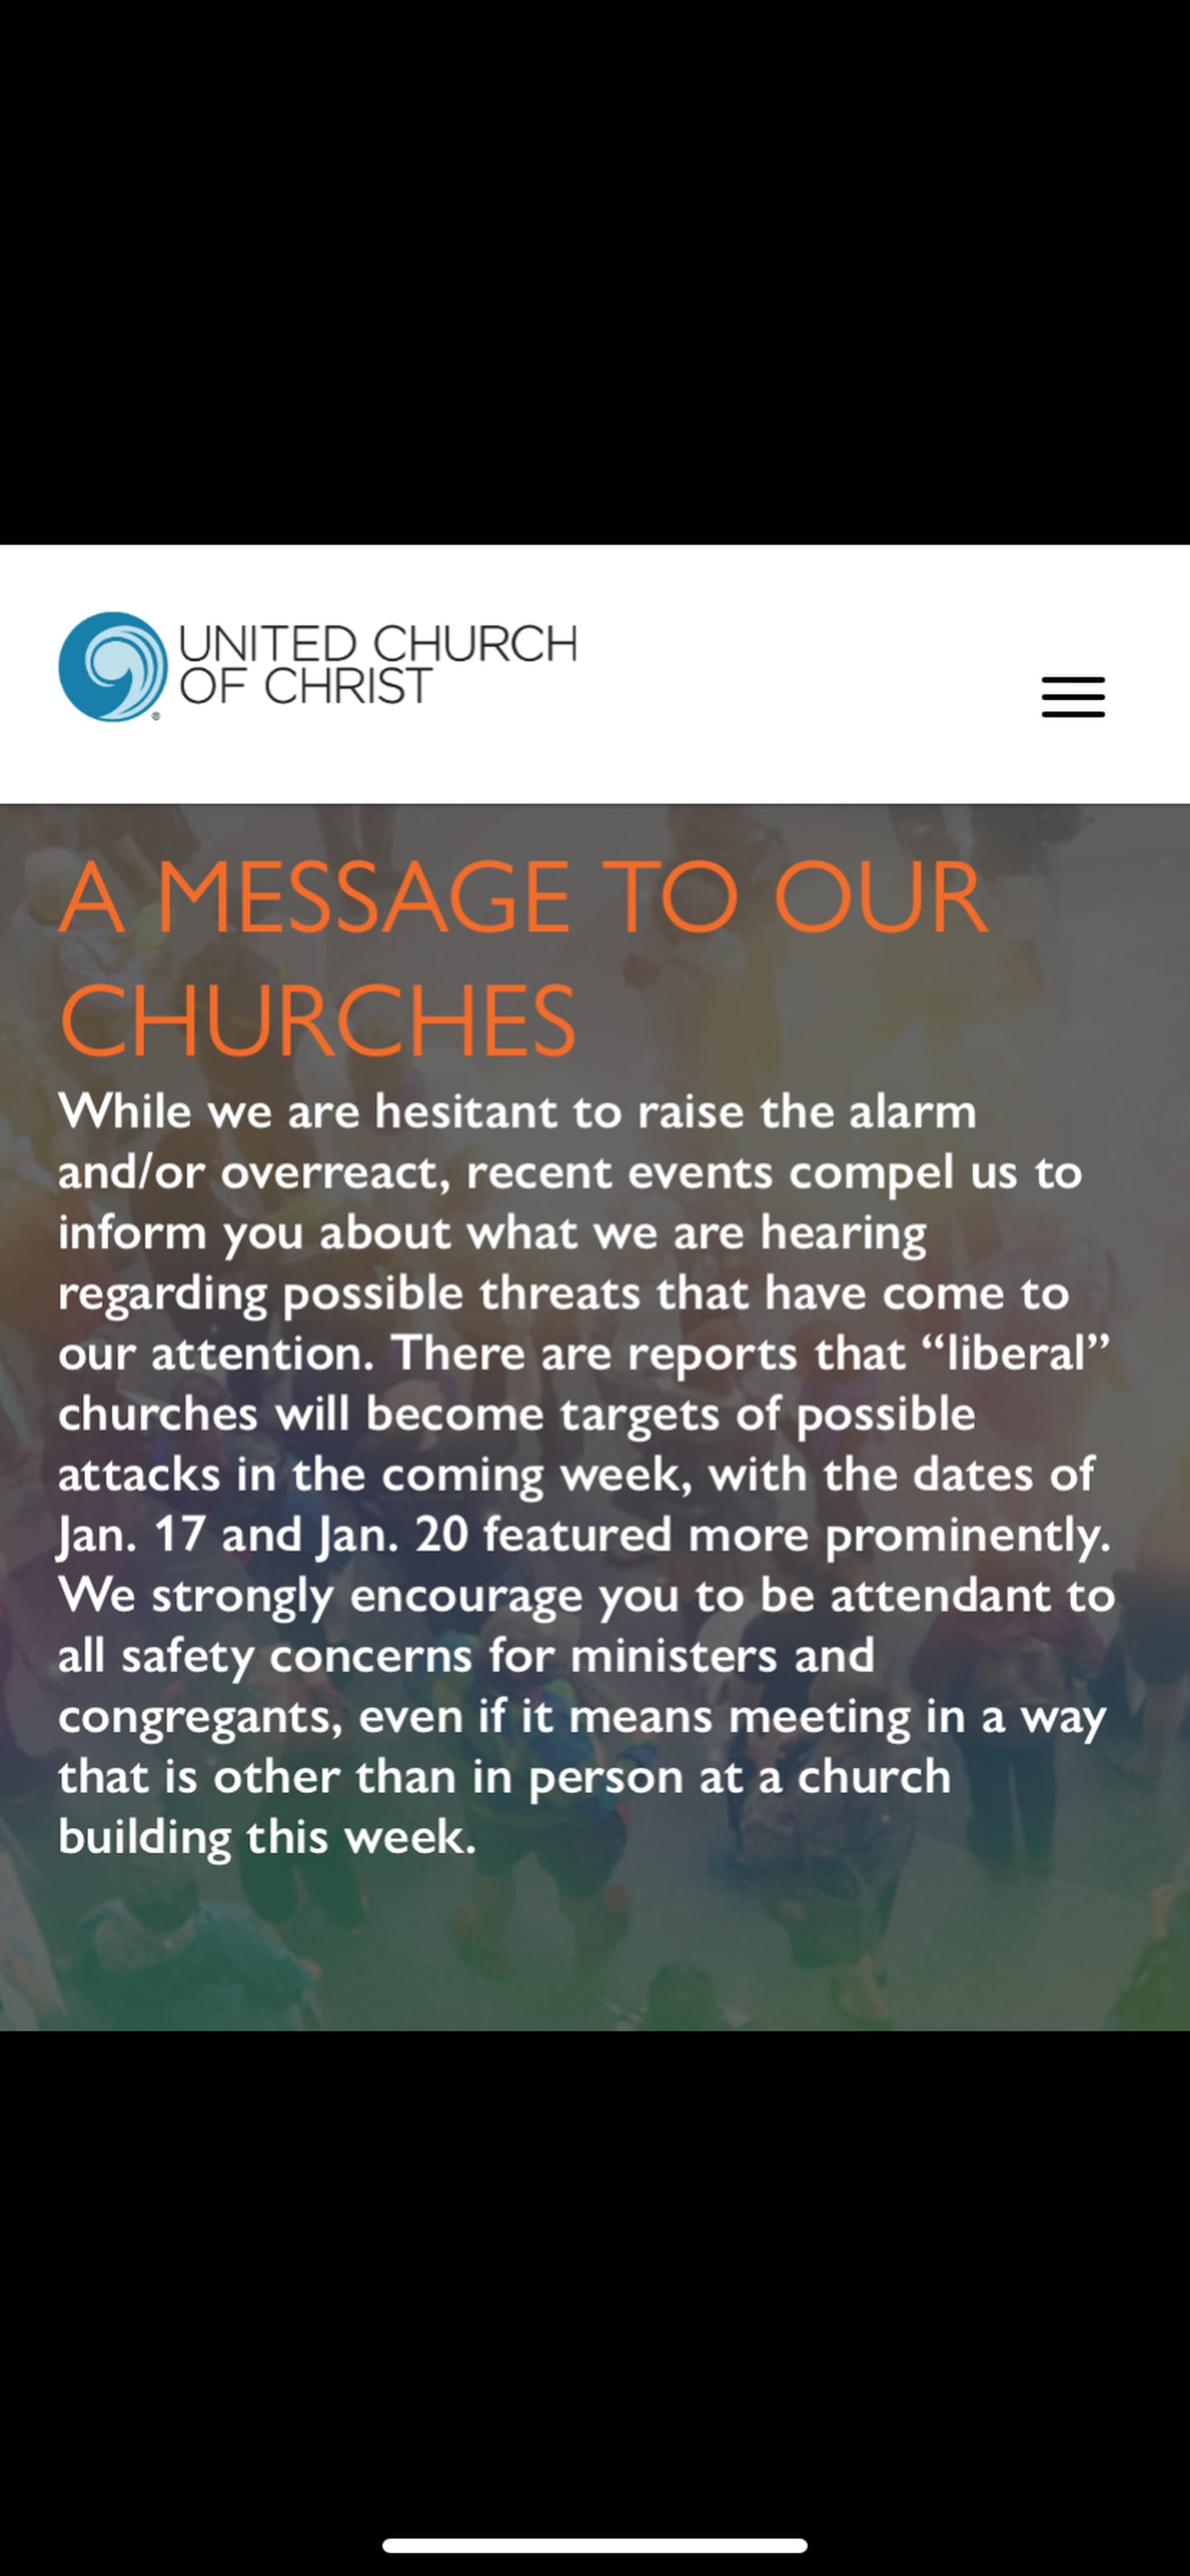 United church of Christ varnar för attacker mot deras kyrkor inför Bidens installation.